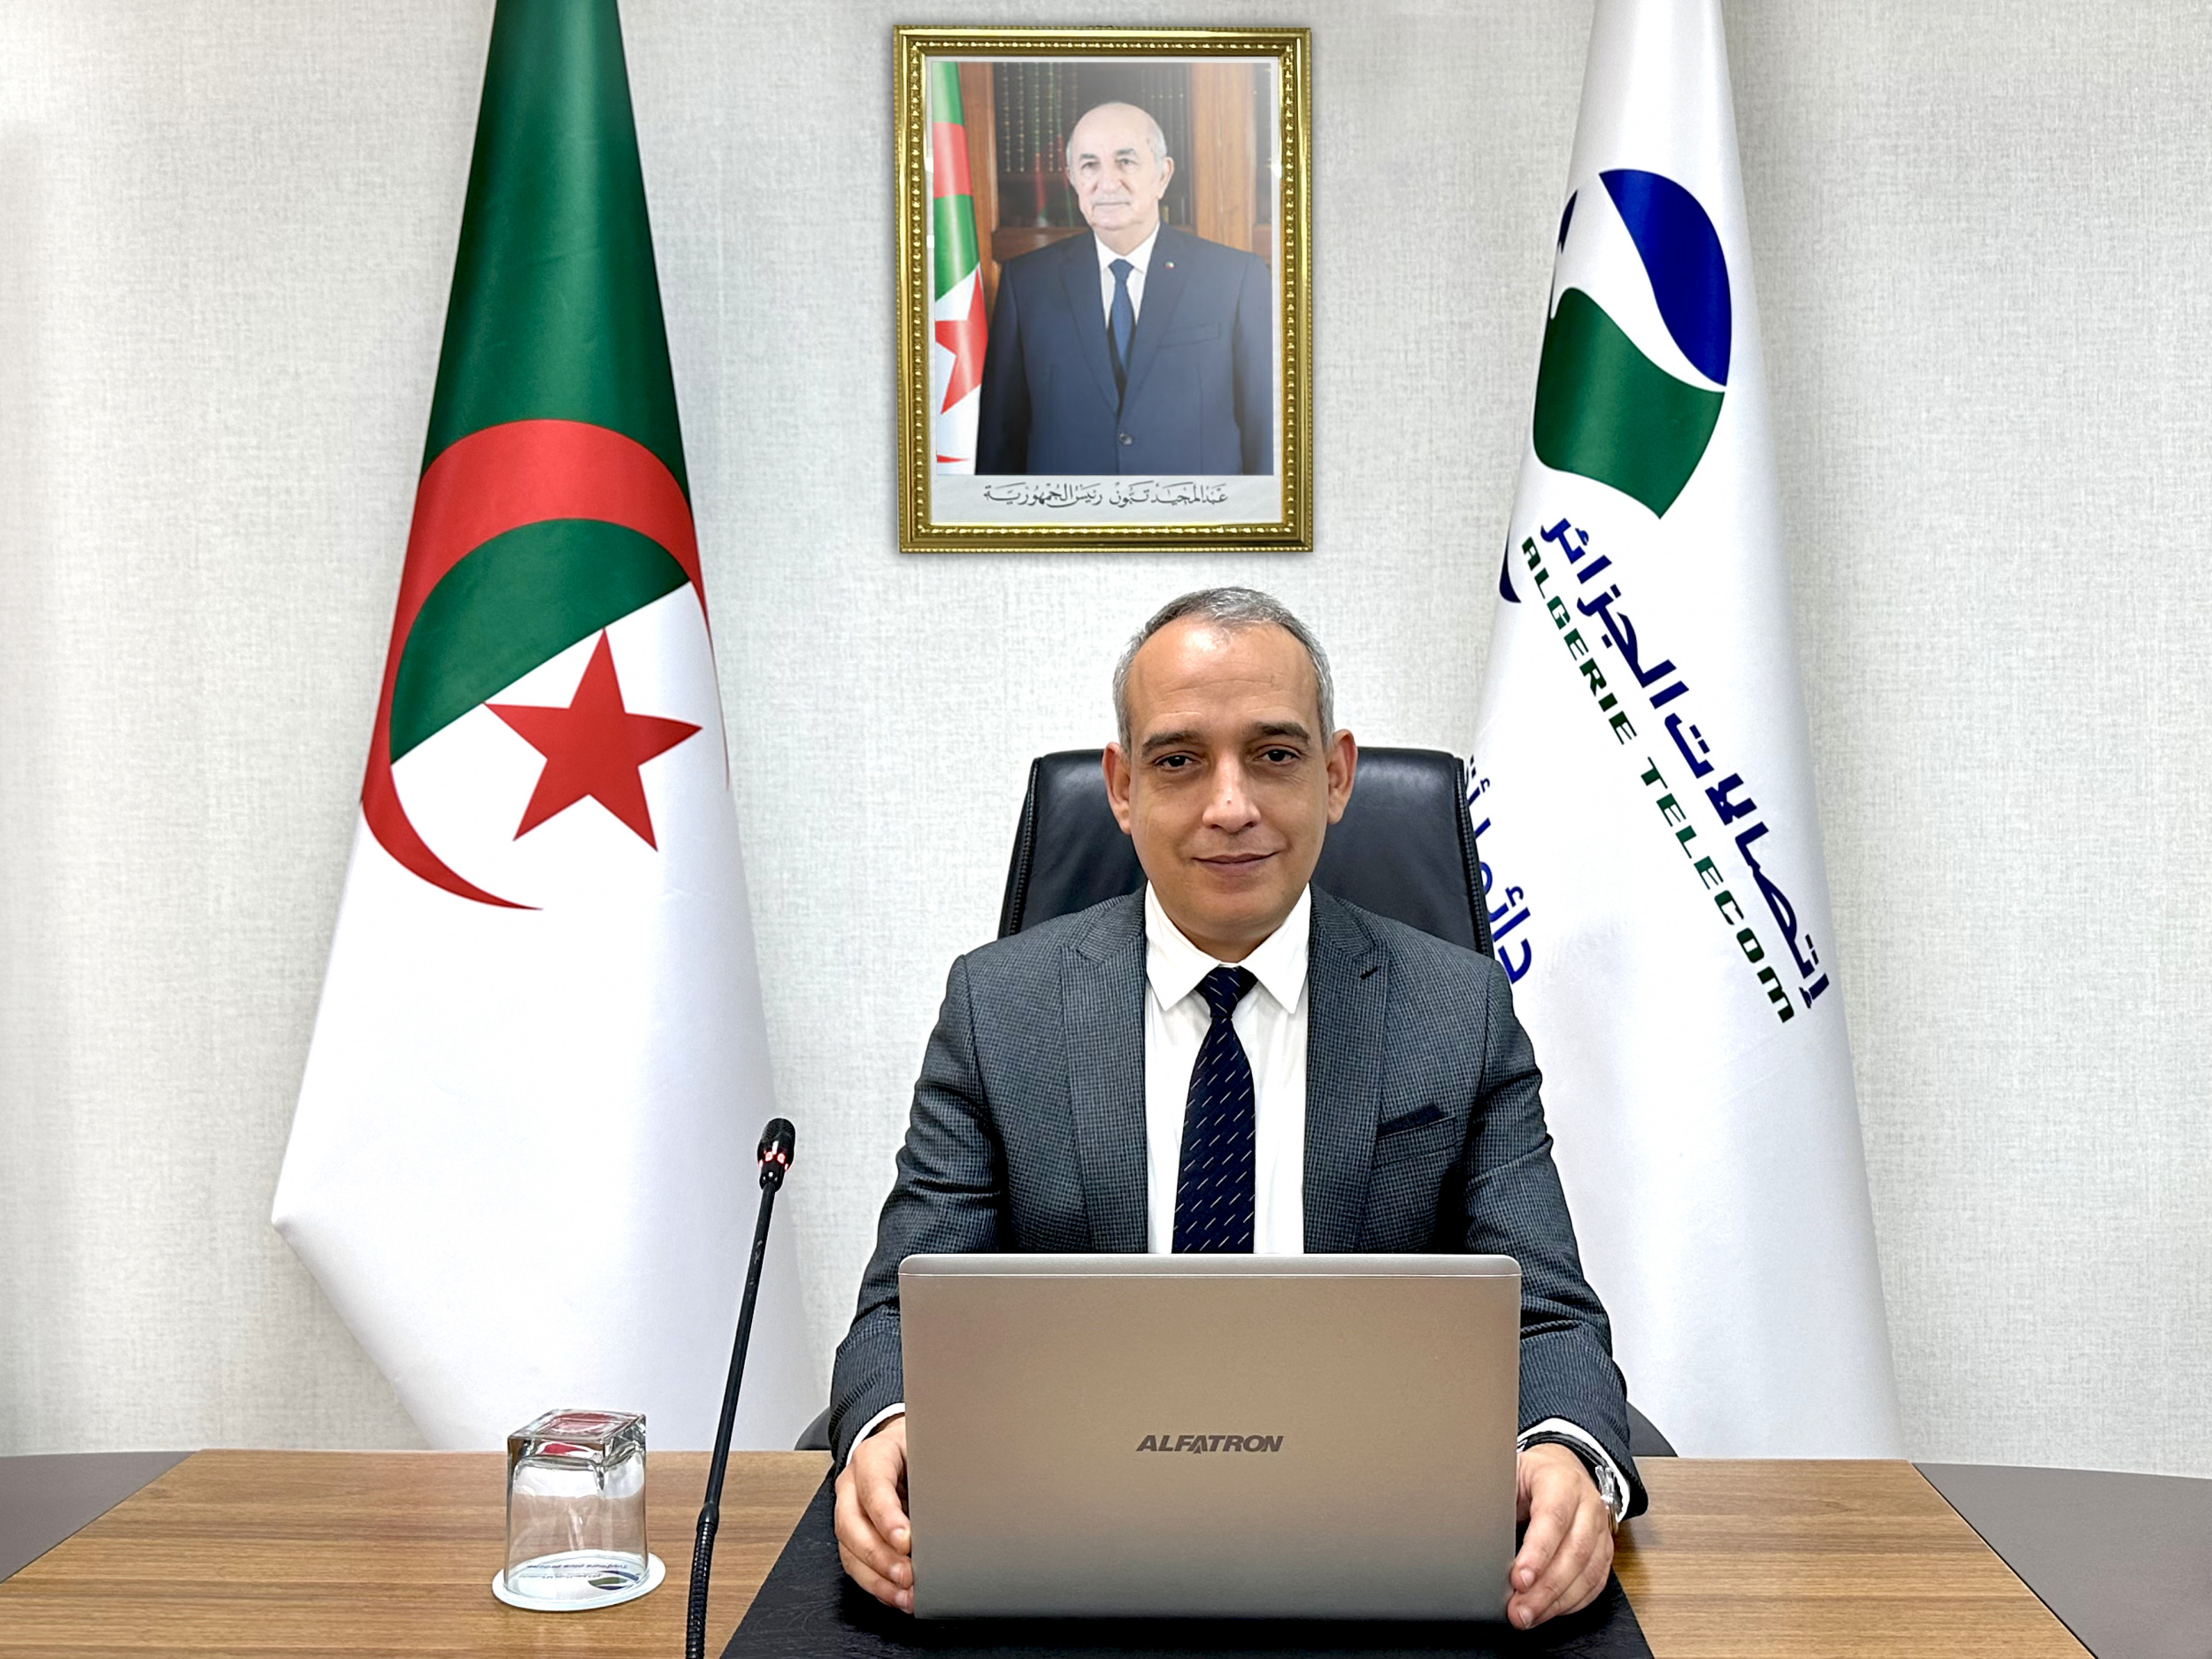 الرئيس المدير العام لاتصالات الجزائر يتحصل على الجائزة المرموقة جائزة التميّز لأفضل رئيس تنفيذي لهذا العام - أفريقيا  خلال الدورة الـ17 لقمة قادة قطاع الاتصالات في دبي